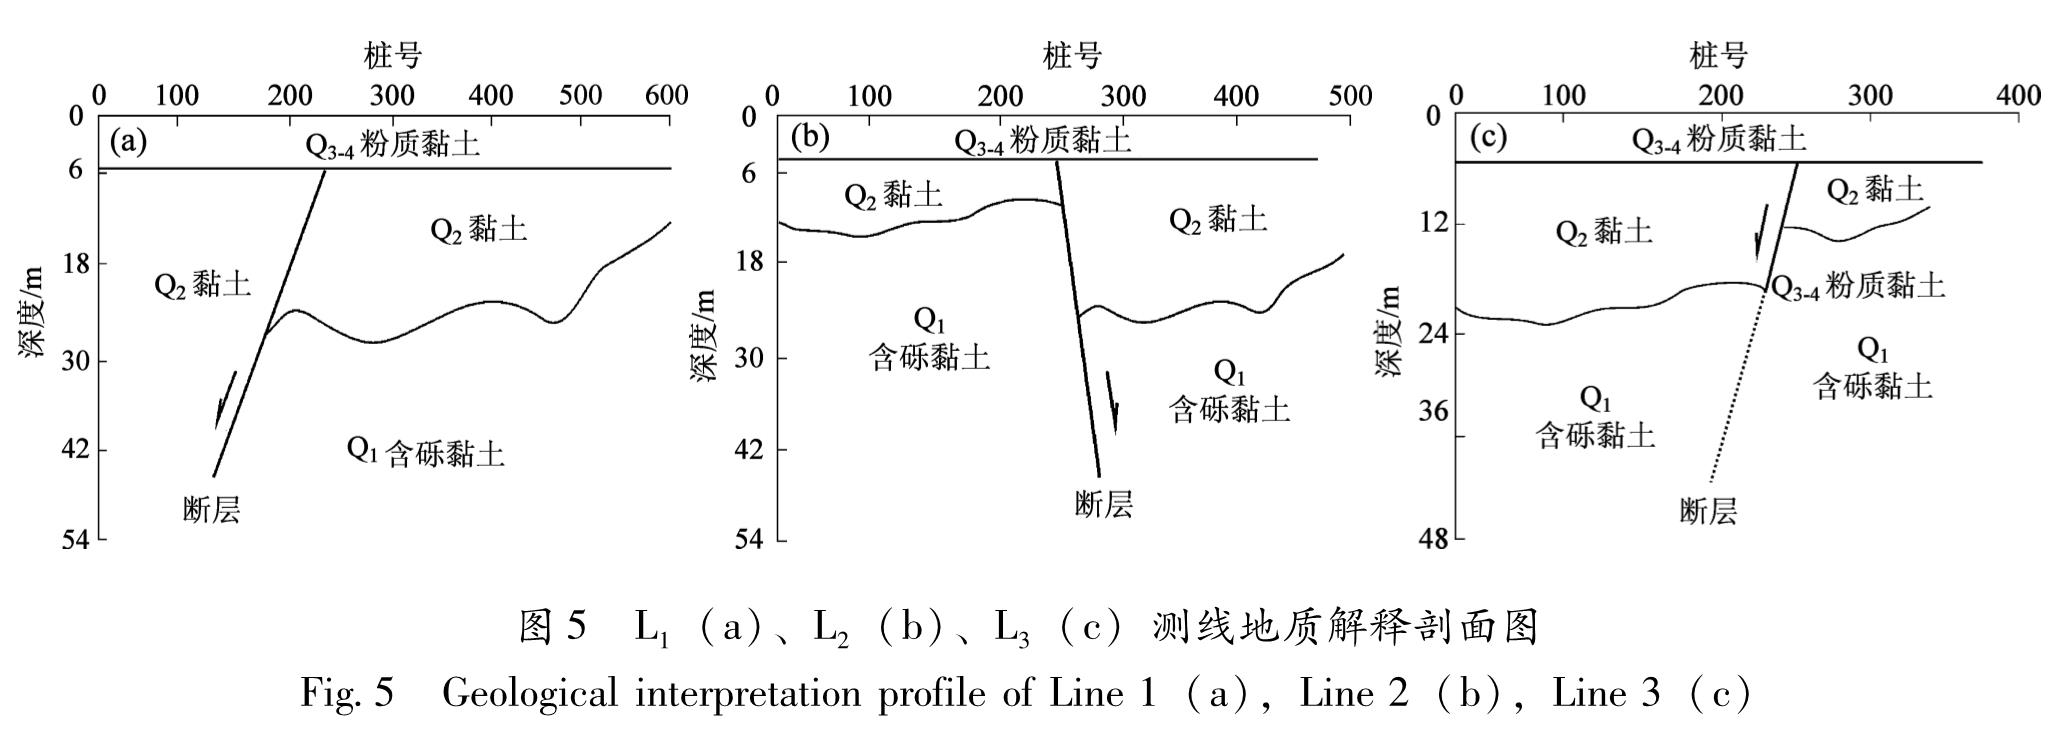 图5 L1(a)、L2(b)、L3(c)测线地质解释剖面图<br/>Fig.5 Geological interpretation profile of Line 1(a),Line 2(b),Line 3(c)